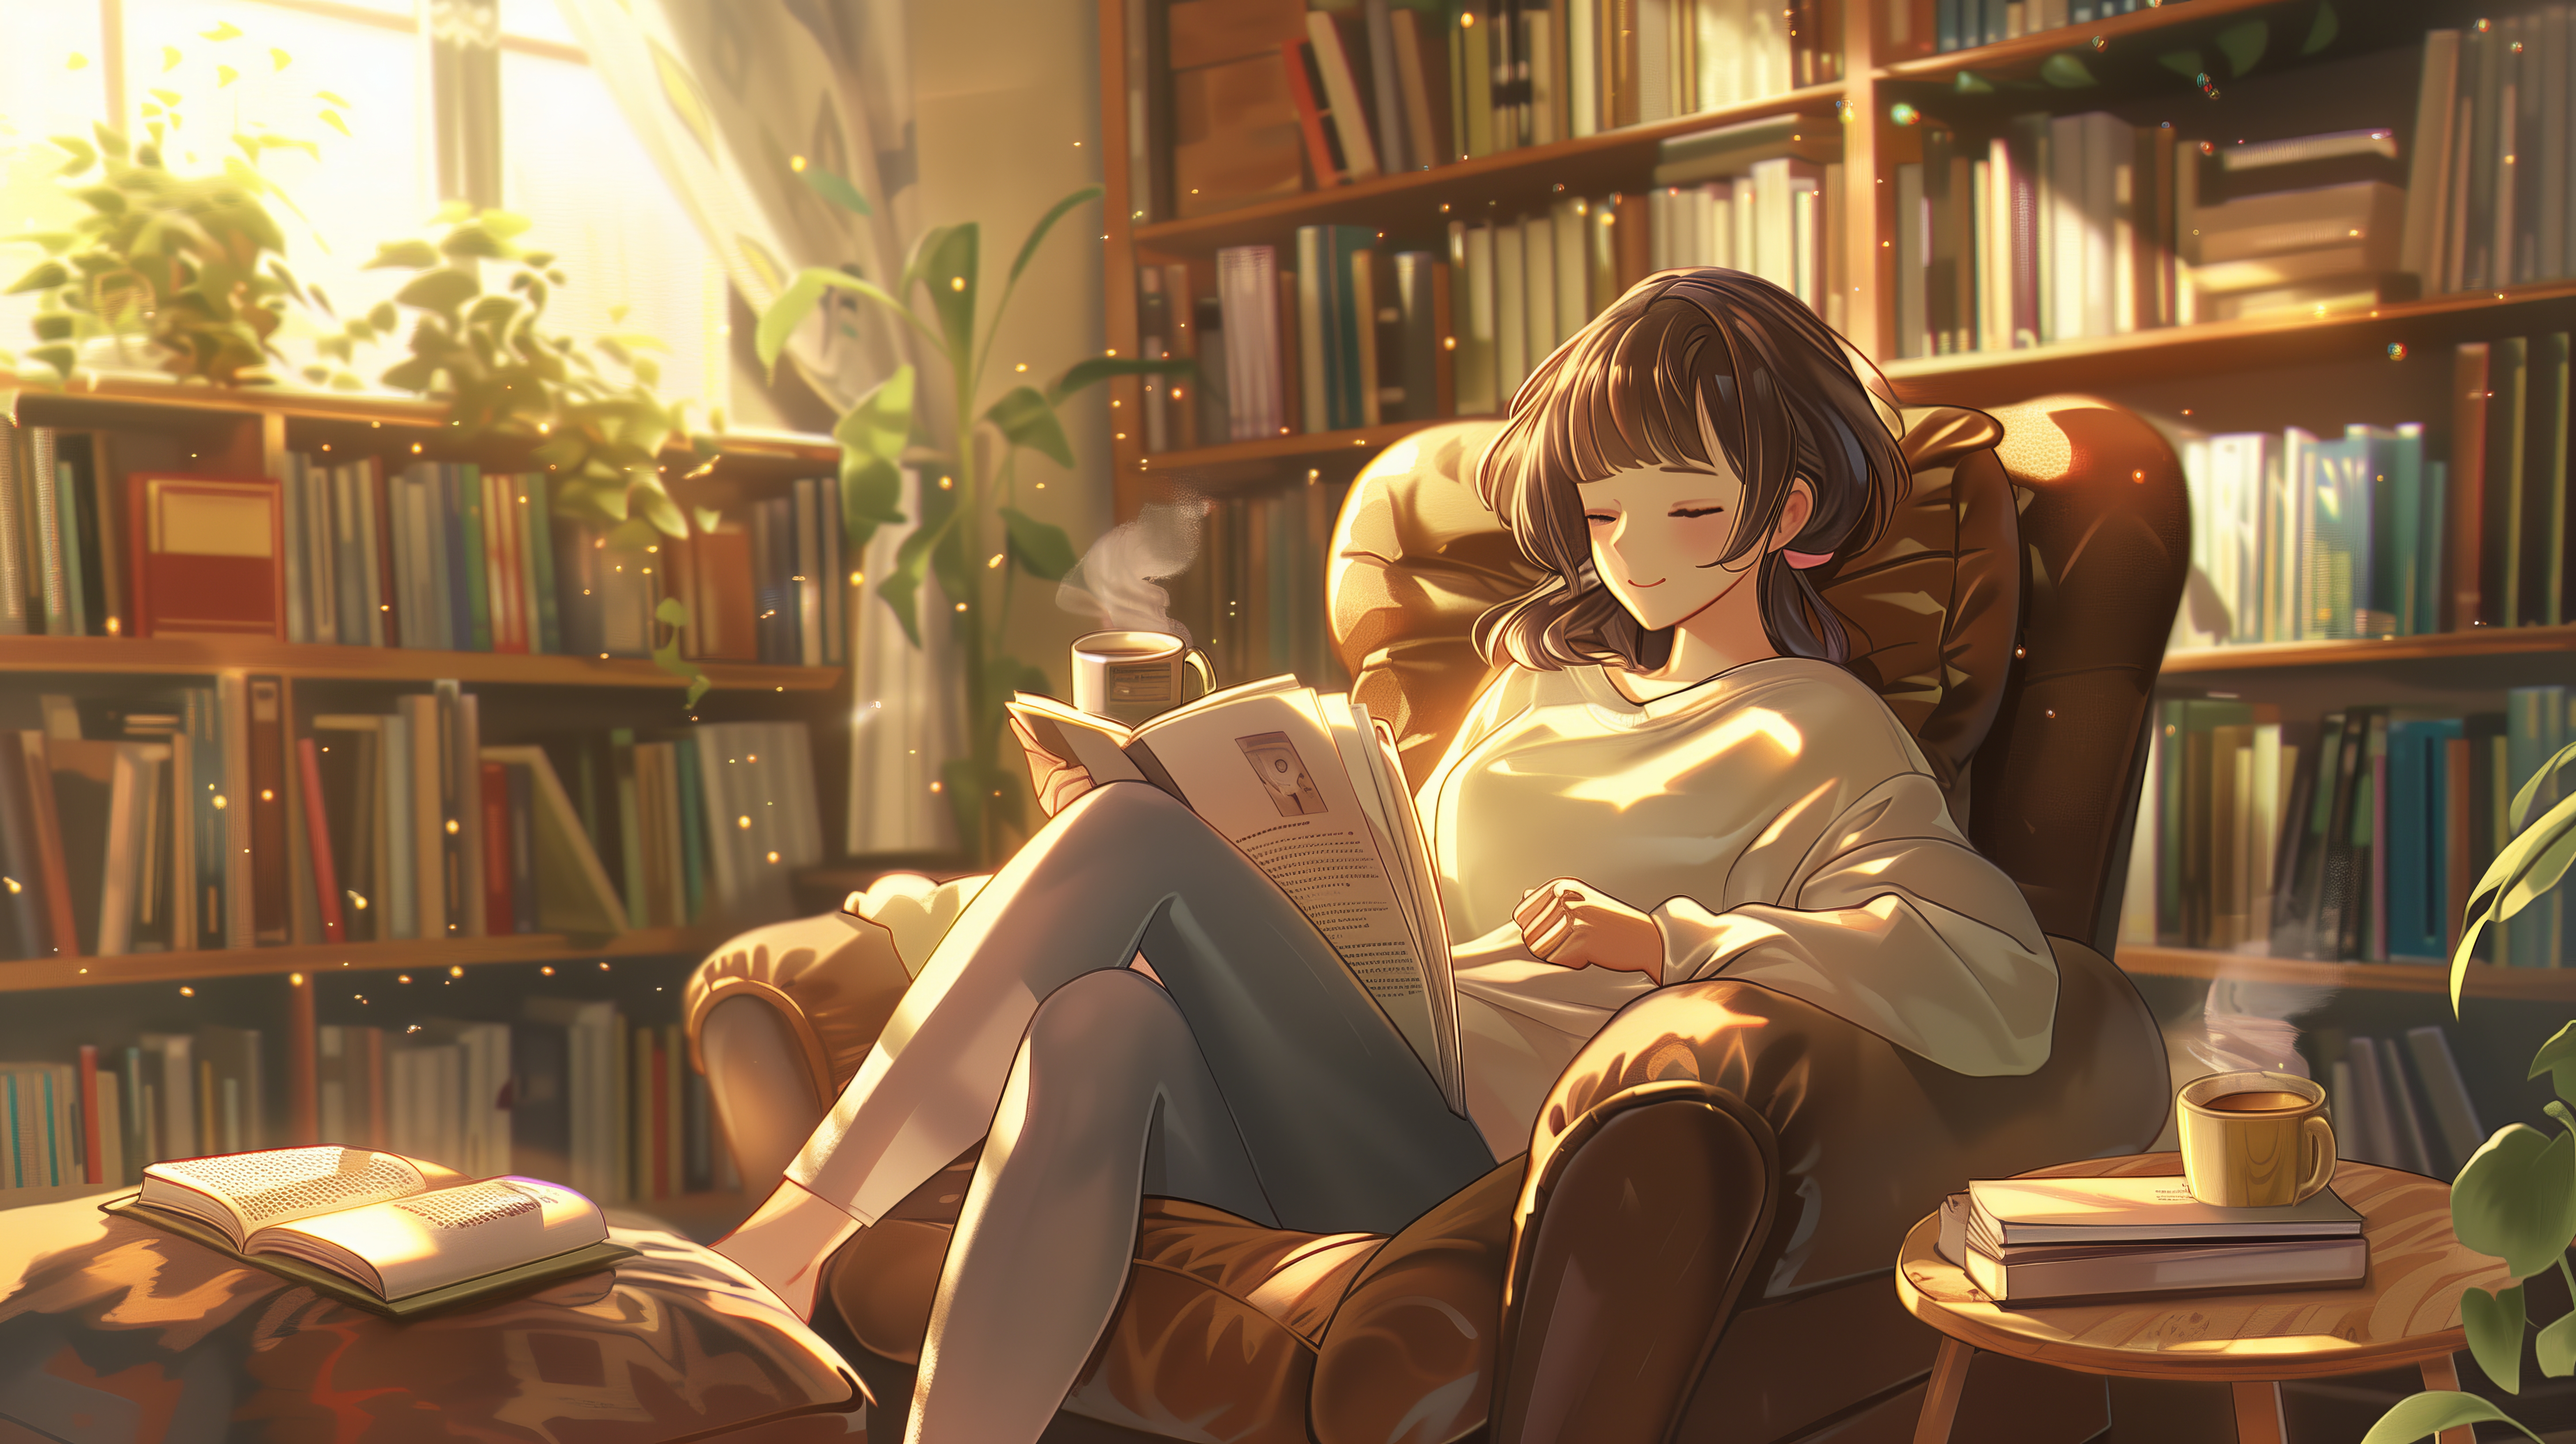 Anime 5824x3264 AI art anime anime girls illustration women armchair library sitting drinking tea reading plants bookshelves books legs crossed smiling closed eyes brunette